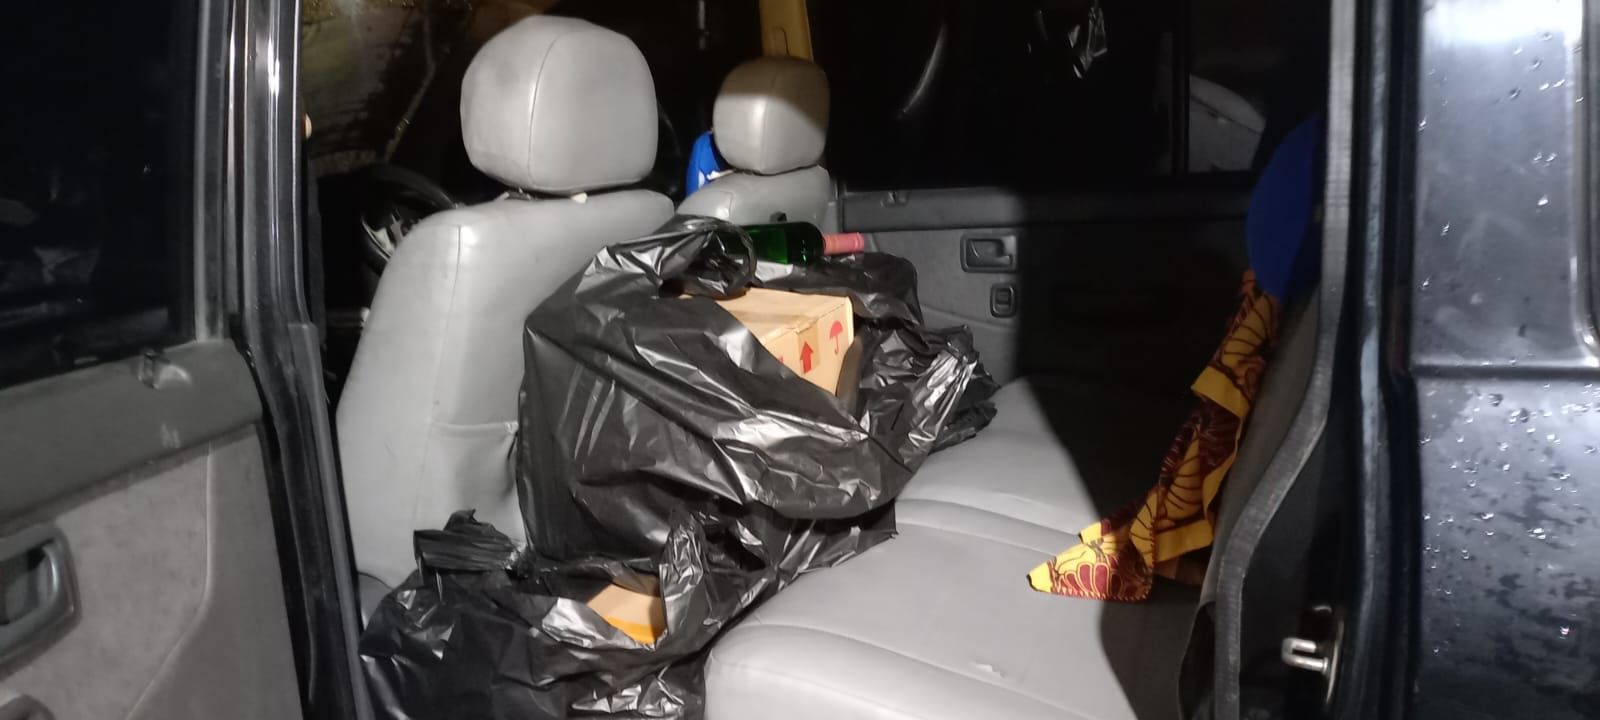 Puluhan botol miras yang diangkut oleh minibus ditemukan oleh Ormas Islam